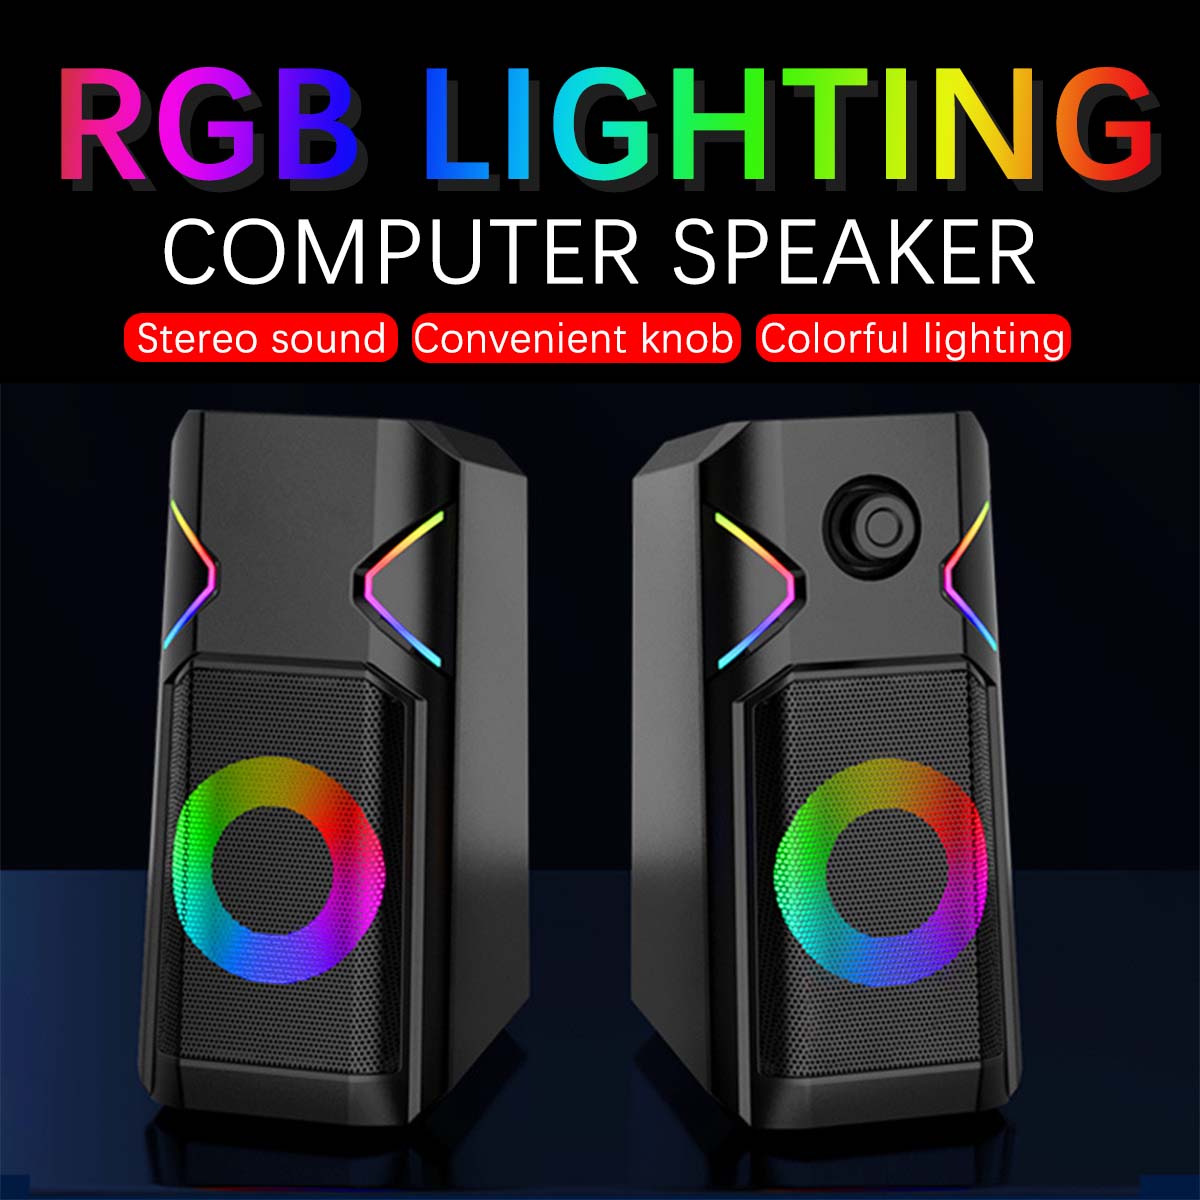 K201-Computer-Speaker-20-Channel-Desktop-Speaker-RGB-Colorful-Light-Stereo-Satellite-Speaker-1951387-1